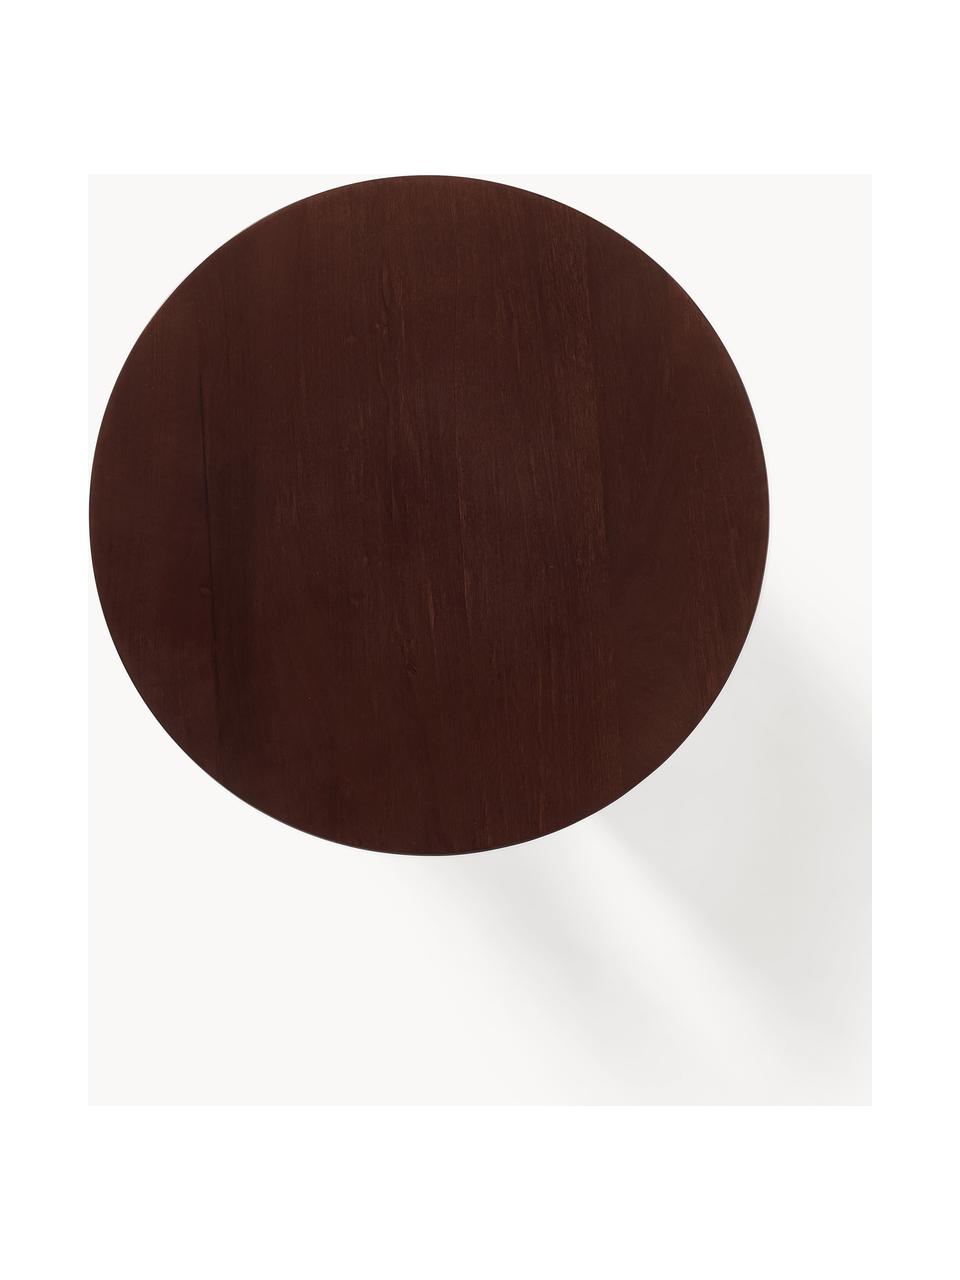 Table d'appoint ronde en bois Miya, Bois de peuplier, brun foncé laqué, Ø 53 cm, haut. 55 cm